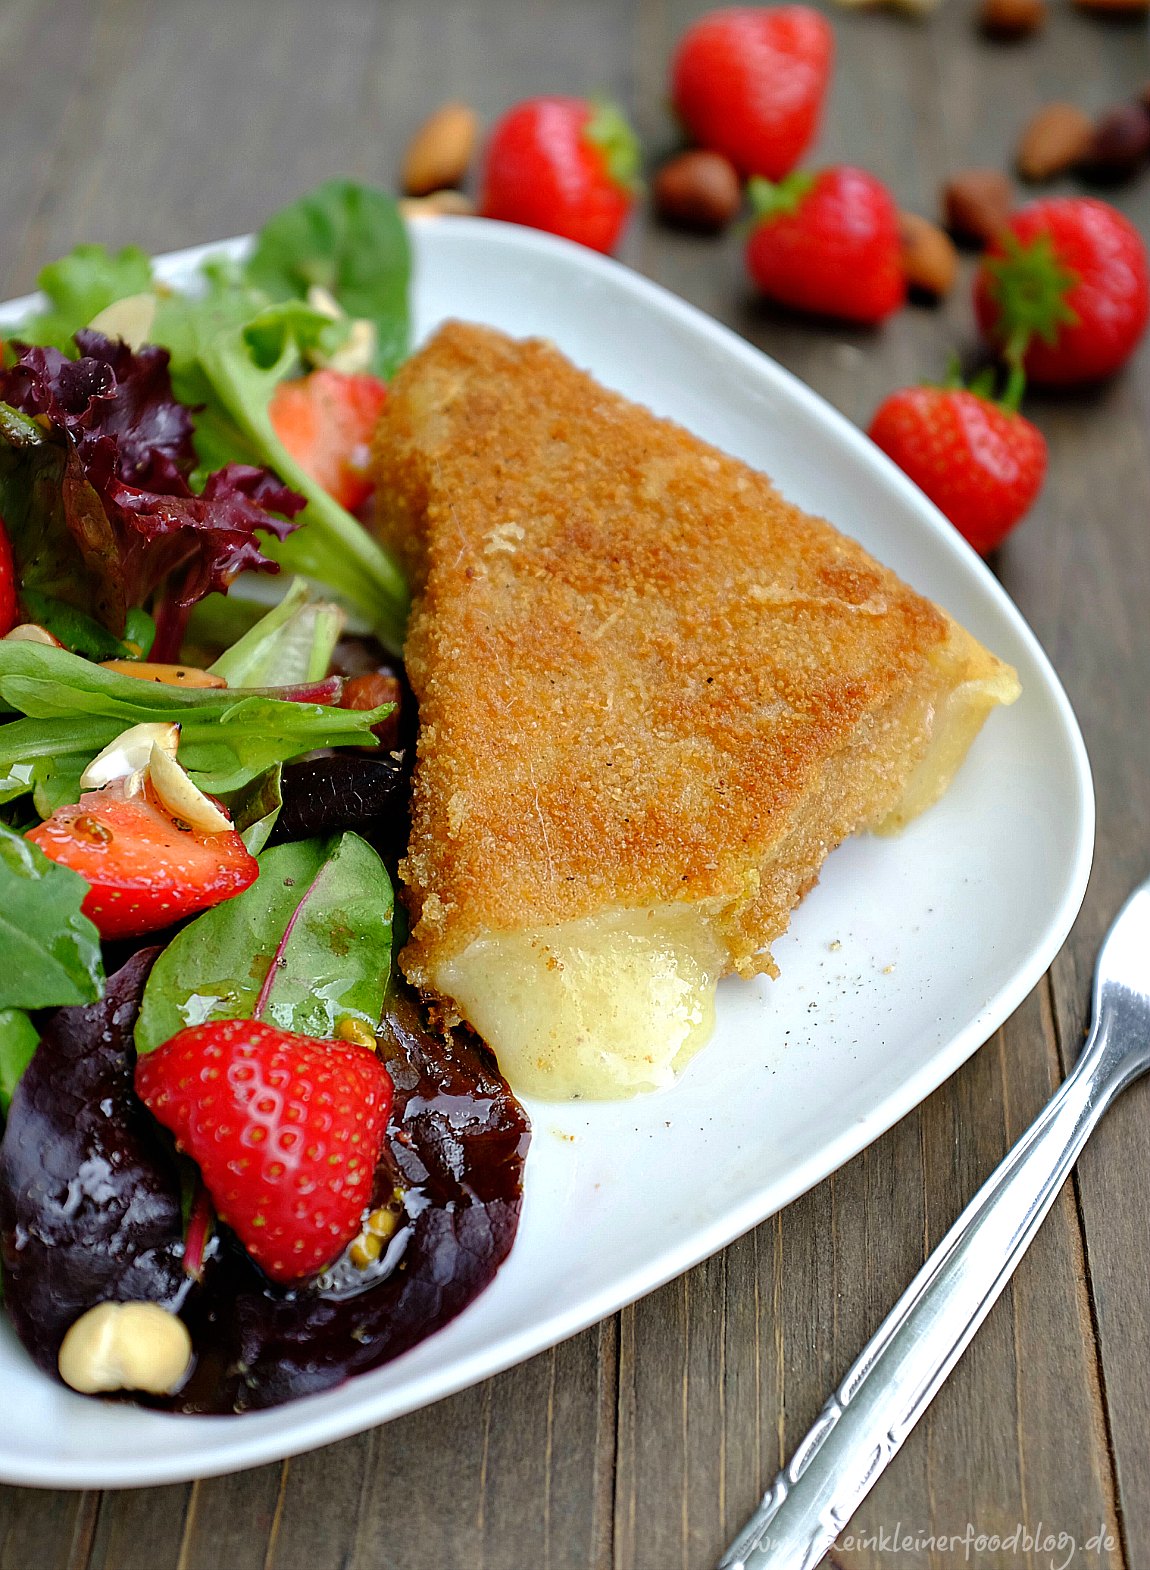 Holen wir uns den Sommer ins Haus: Panierter Comté-Käse mit einem fruchtigen Sommersalat ist ein tolles Abendessen oder leichtes Mittagessen. Zubereitet in 30 Minuten und mit garantierten Oh-wie-lecker Gefühl.